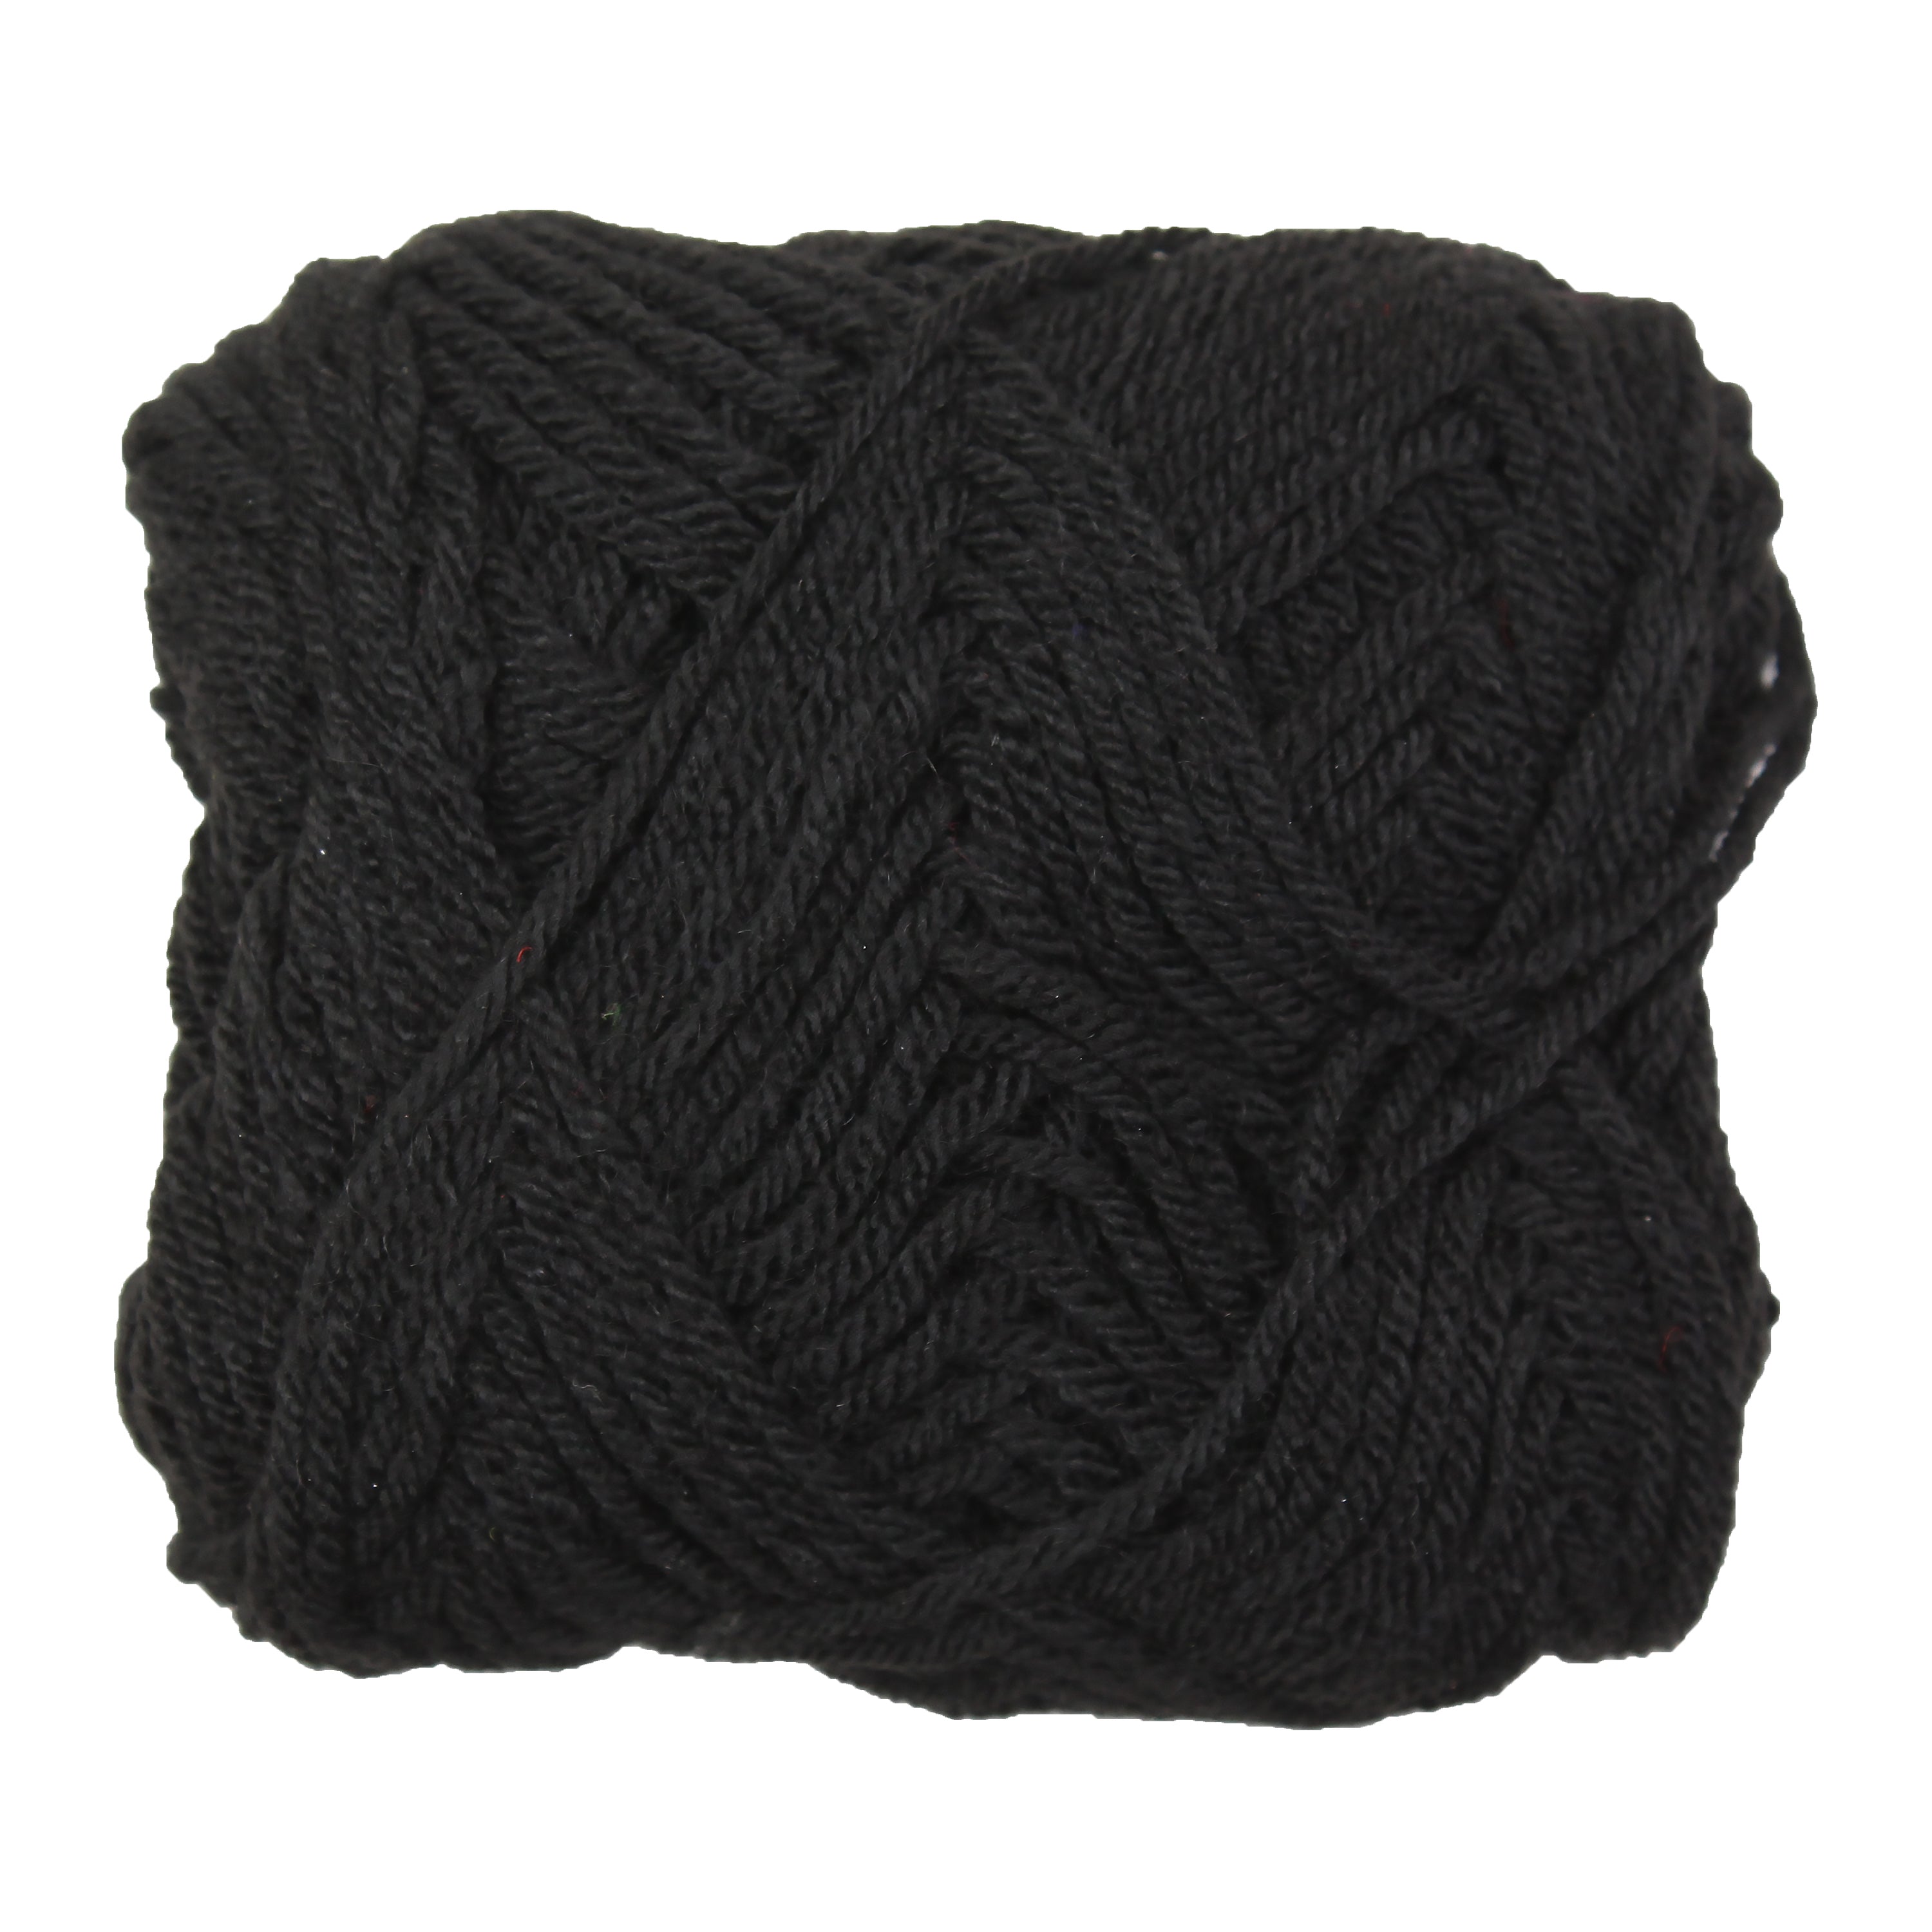 Wool Yarn - Black 12G